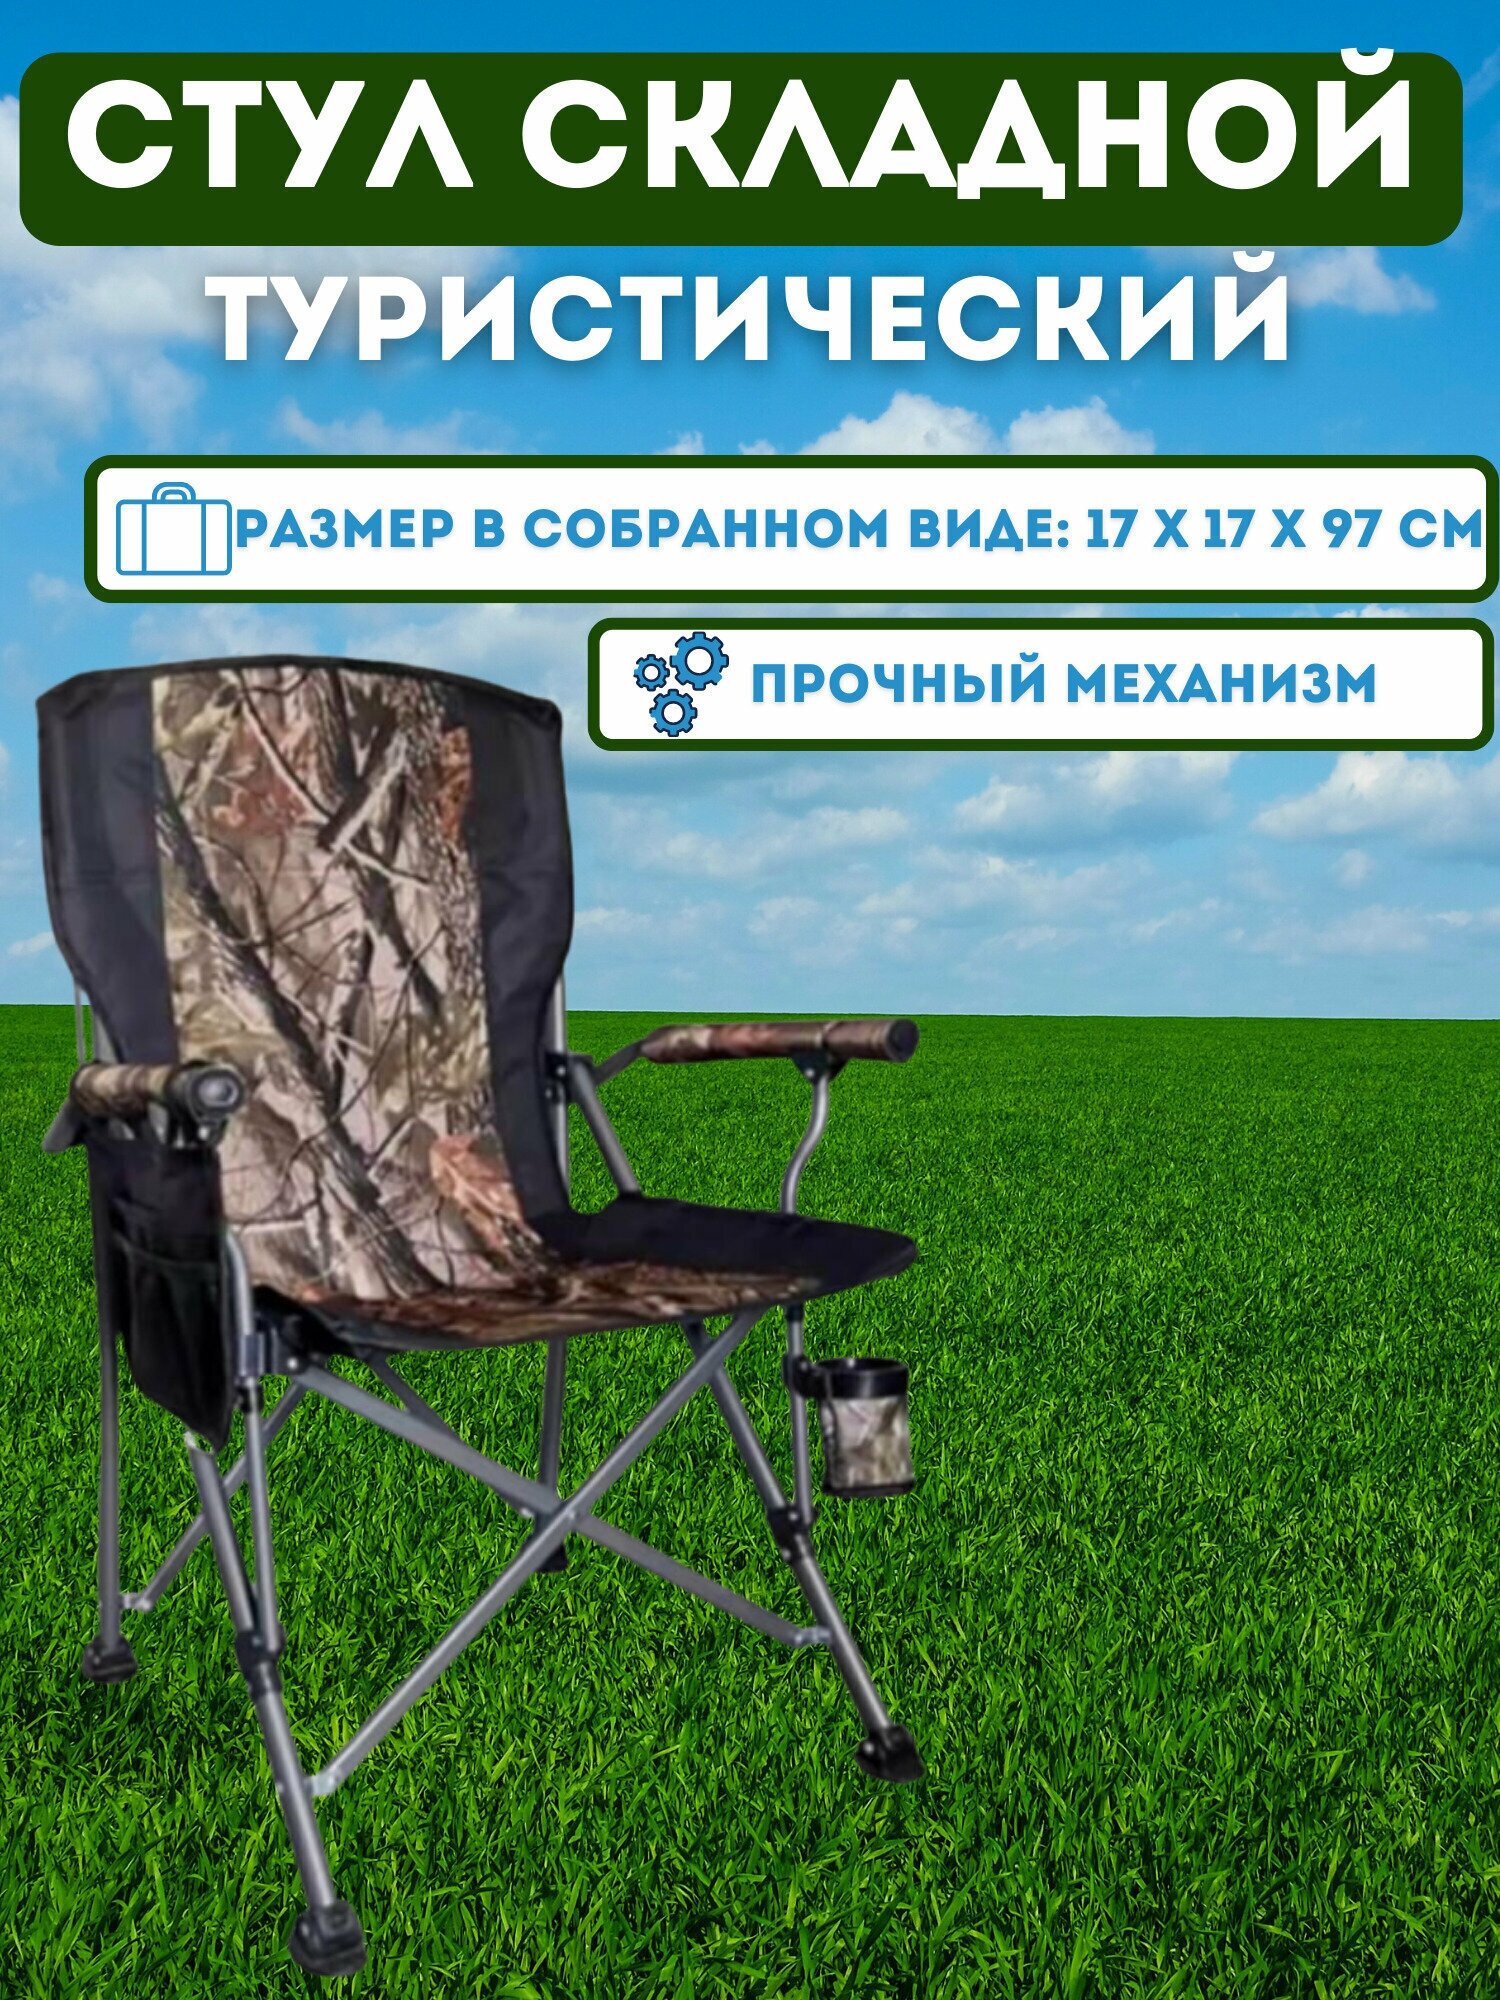 Складное кресло MirCamping 0628 Стул складной туристический / Табурет складной / Табурет складной / туристический / садовый / Рыбалка